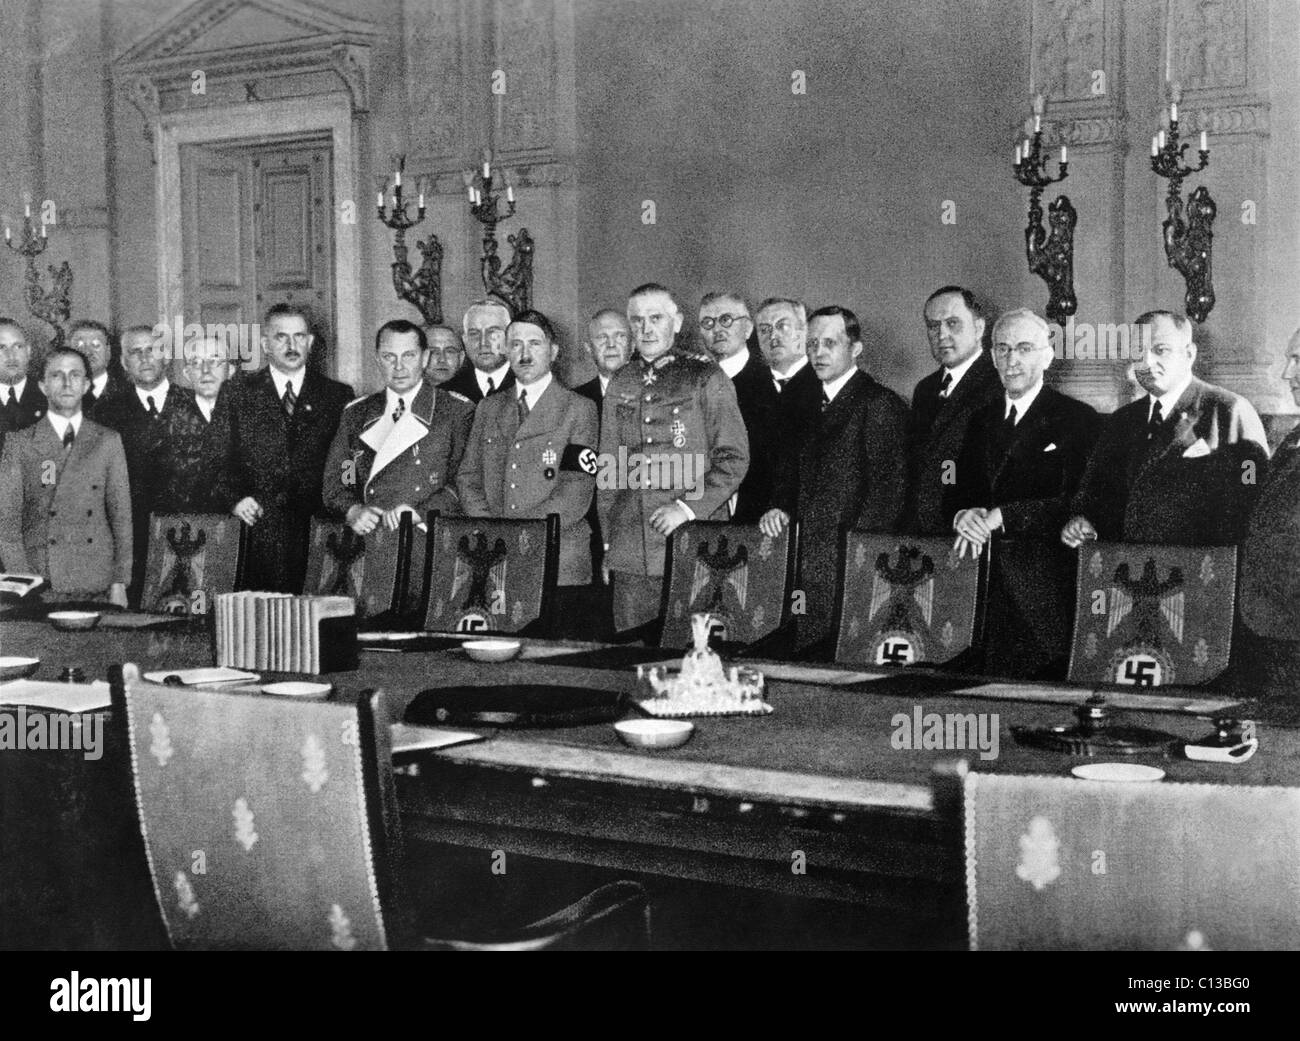 Adolf Hitler, center; Franz von Papen, right of Hitler; Hermann Goering, (white lapels); Joseph Goebbels, left front, 1933 Stock Photo